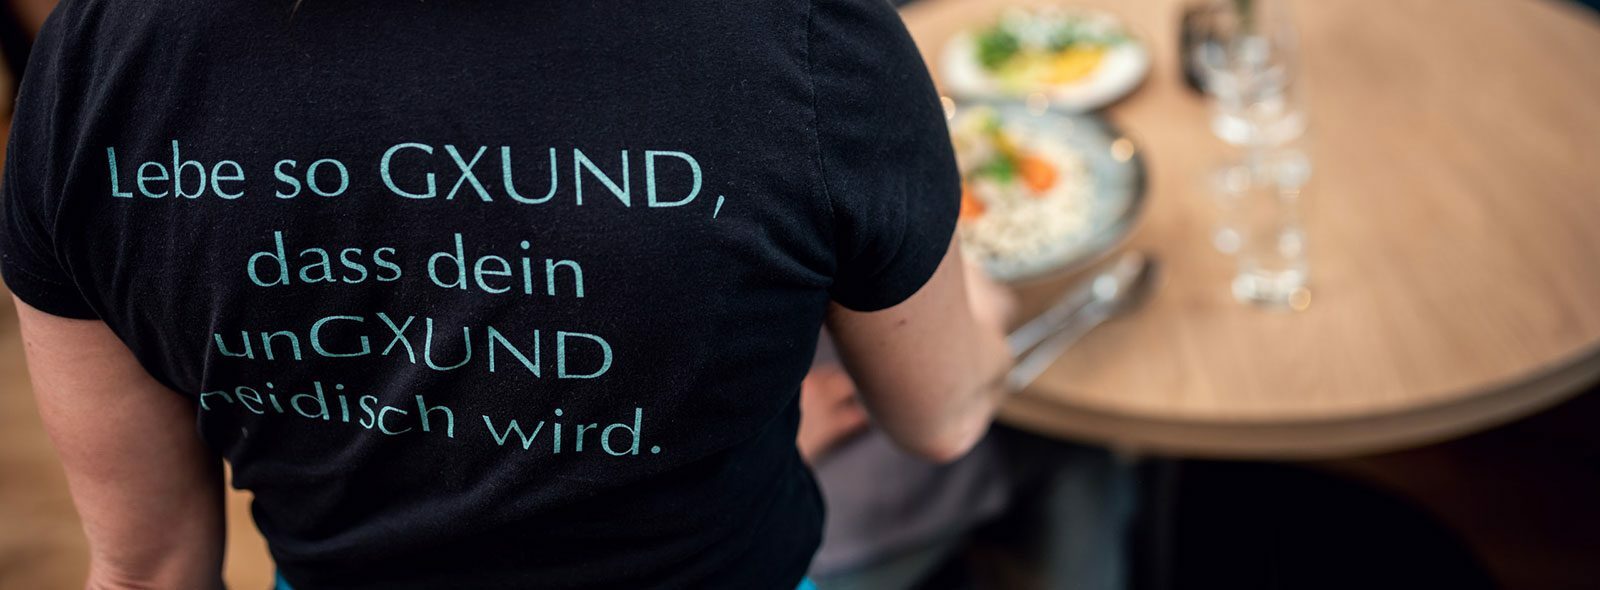 Jobs in Gastein: Bewerben Sie sich als Restaurantkaufmann/Restaurantkauffrau im GXUND - Ihr Top-Job in der Gastronomie in Salzburg